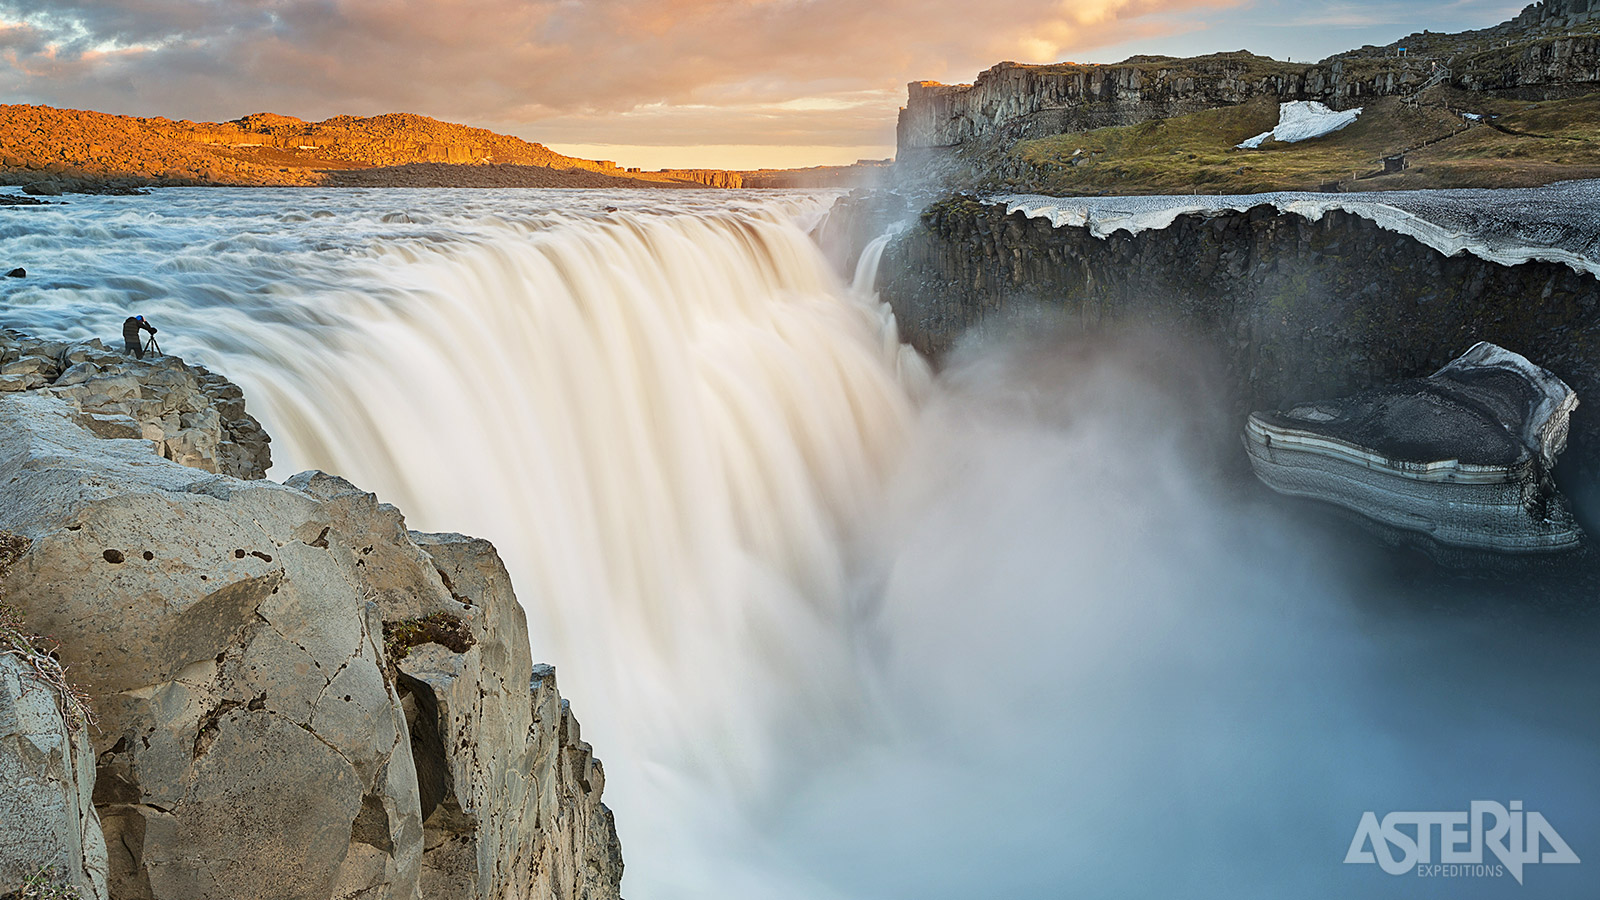 De imposante Dettifoss-waterval ligt in het noordwesten en is de krachtigste waterval van Europa